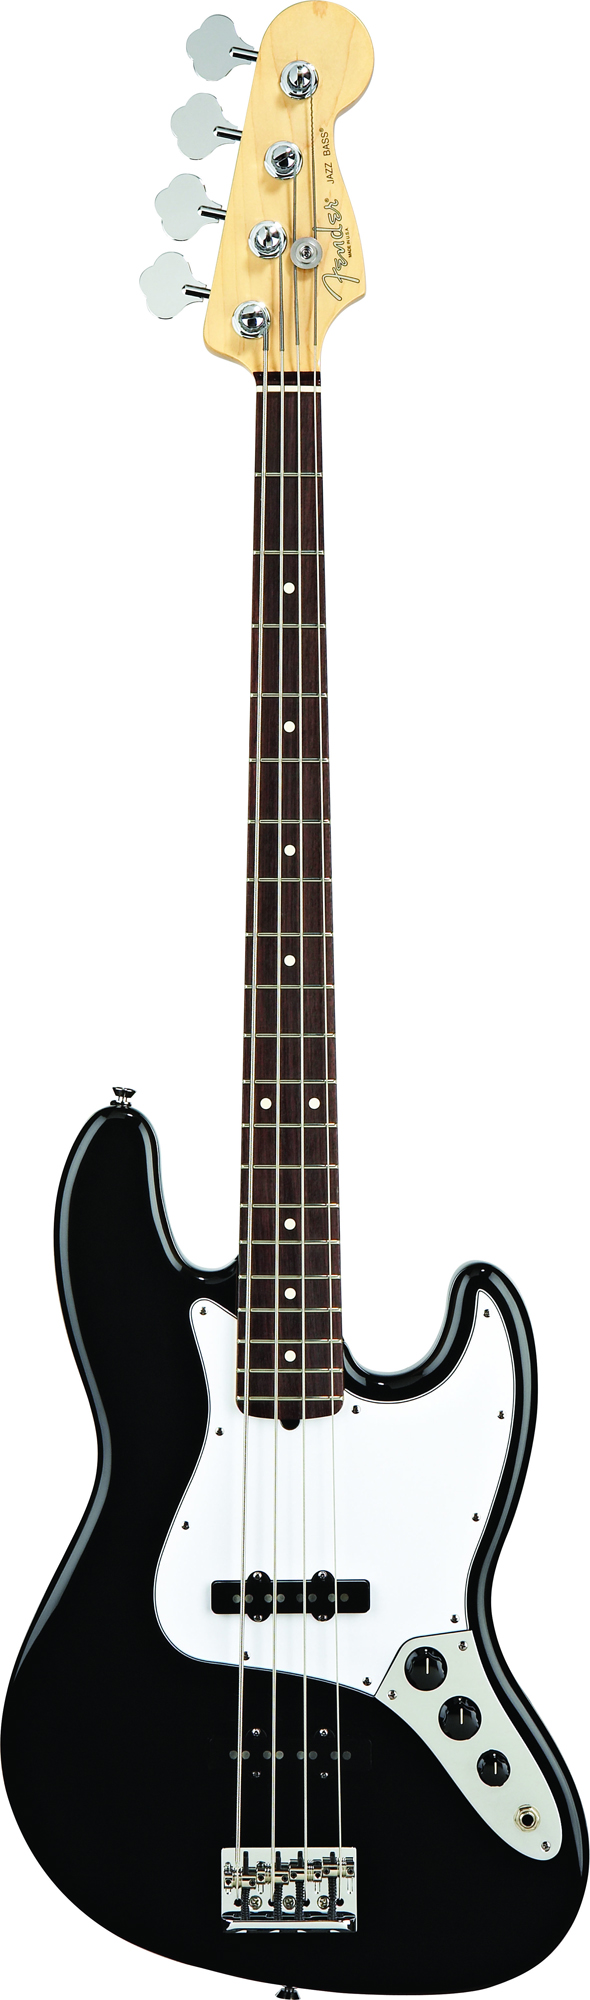 American Standard Jazz Bass